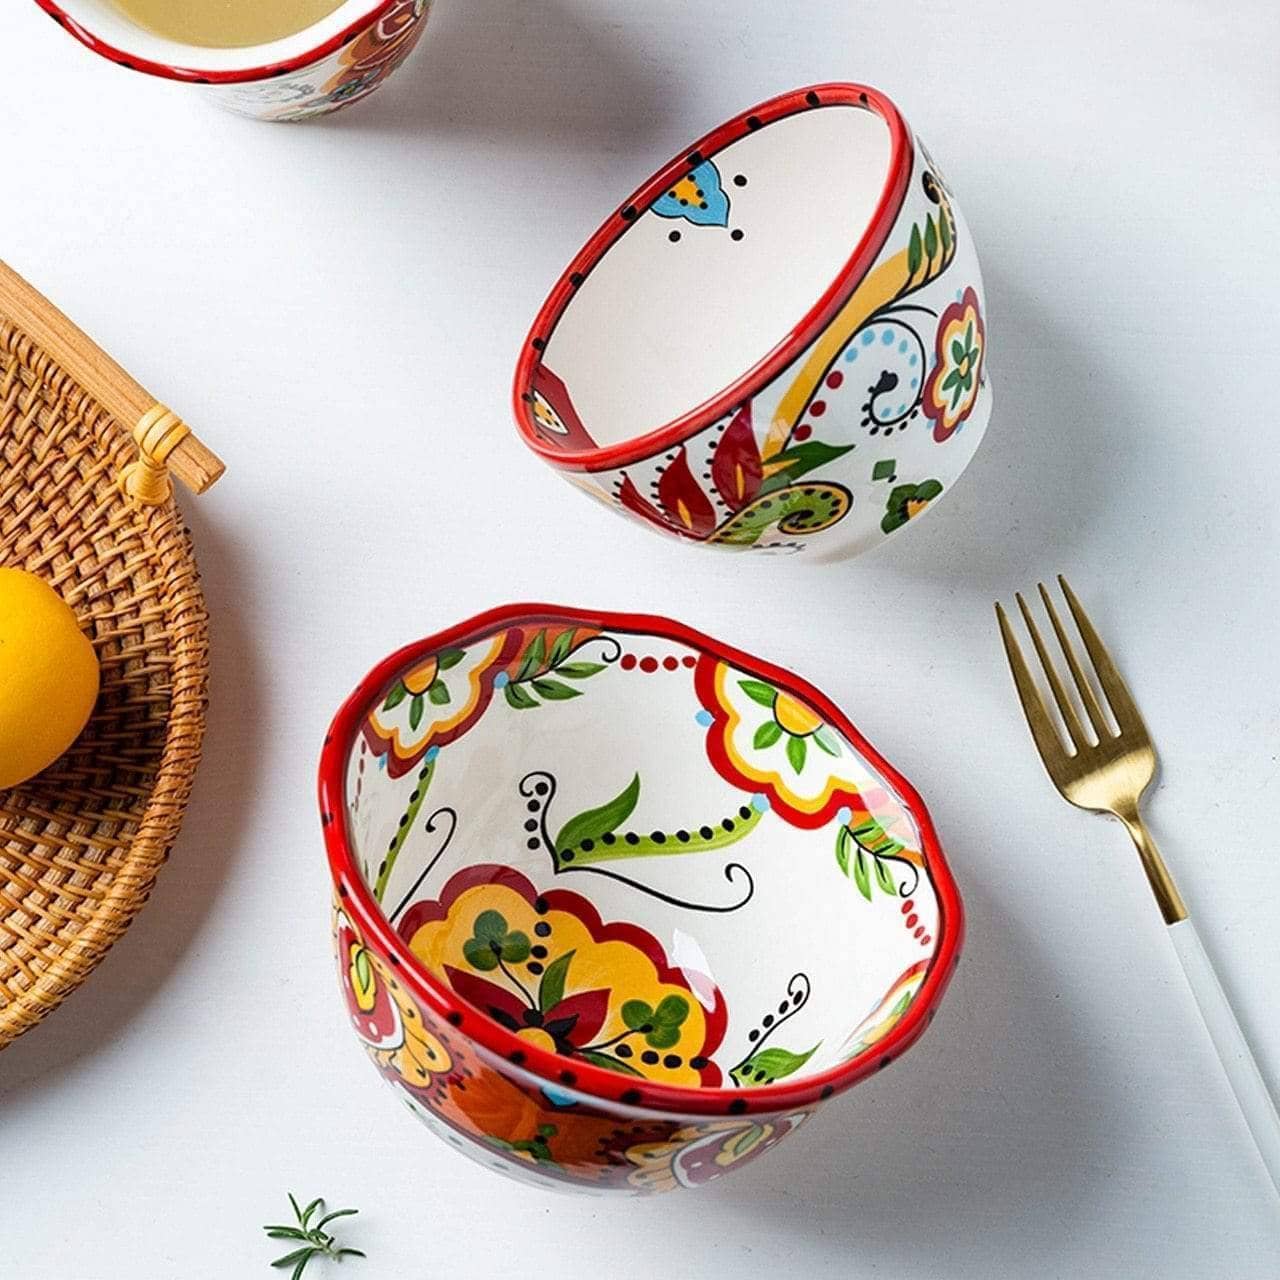 Boho Ceramic Dining Bowl Set - Chic and Bohemian Home Decor